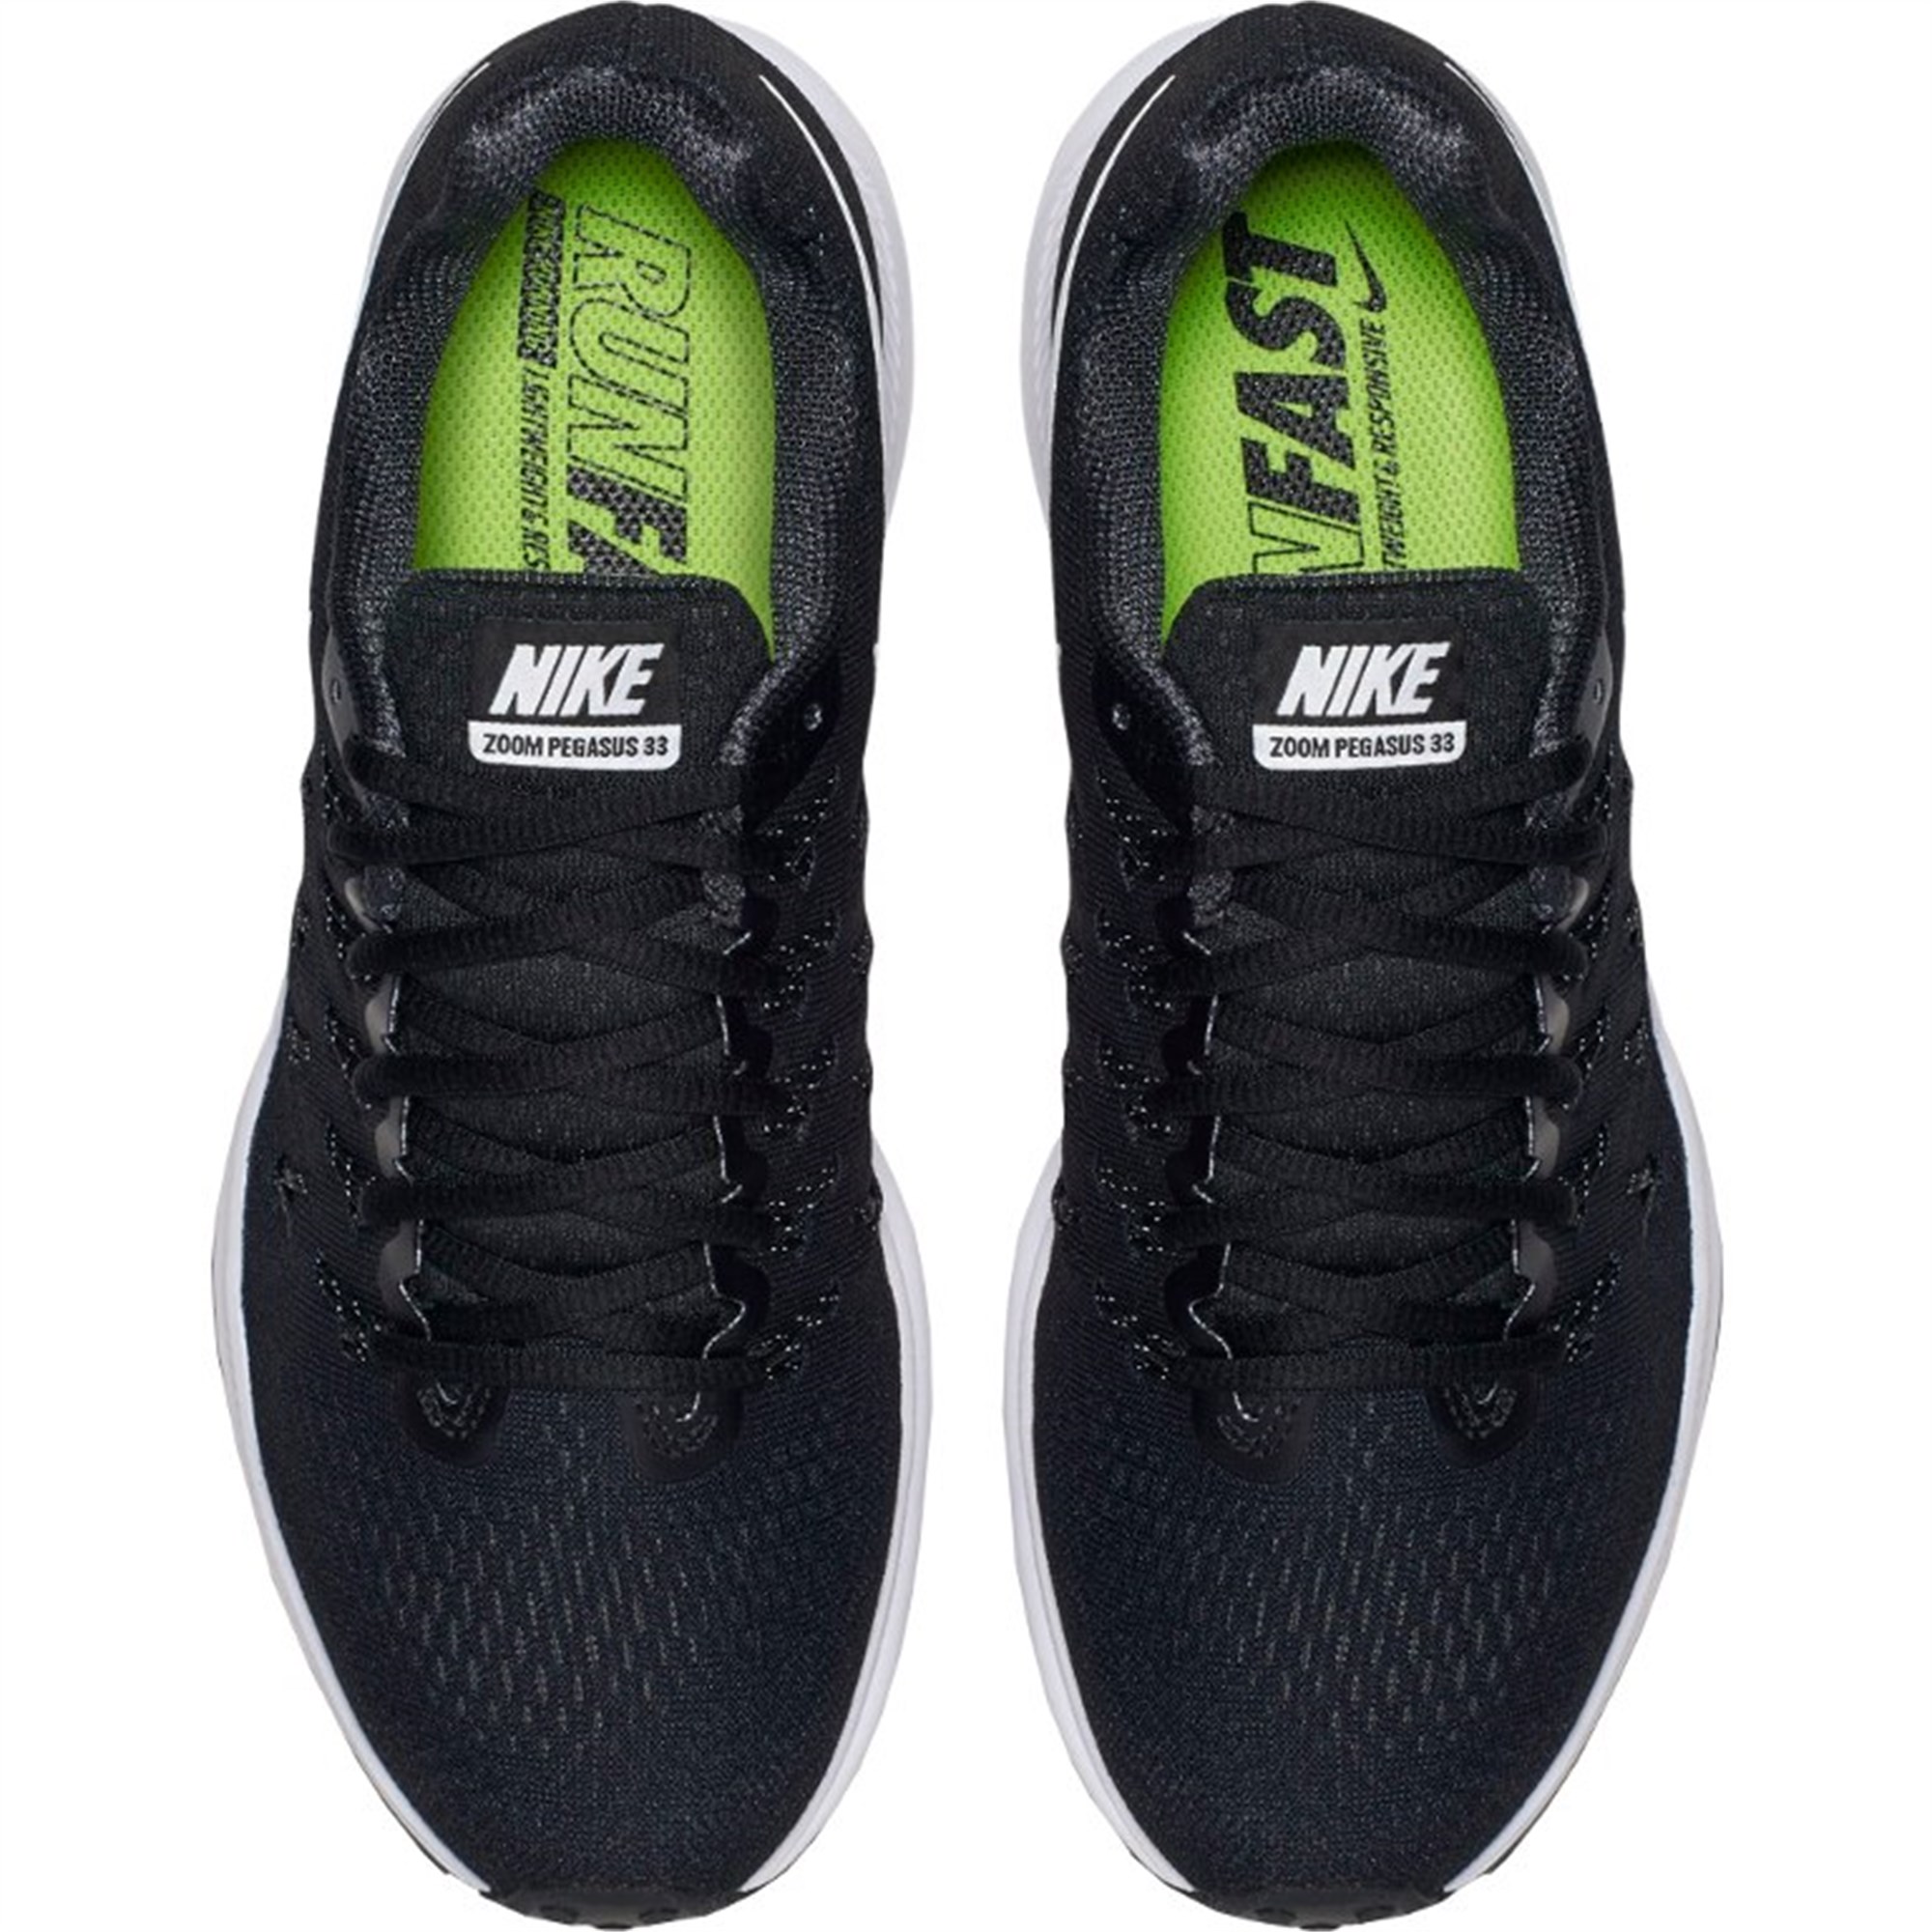 Nike Air Zoom Pegasus 33 Bayan Spor Ayakkabı Ürün kodu: 831356-001 |  Etichet Sport